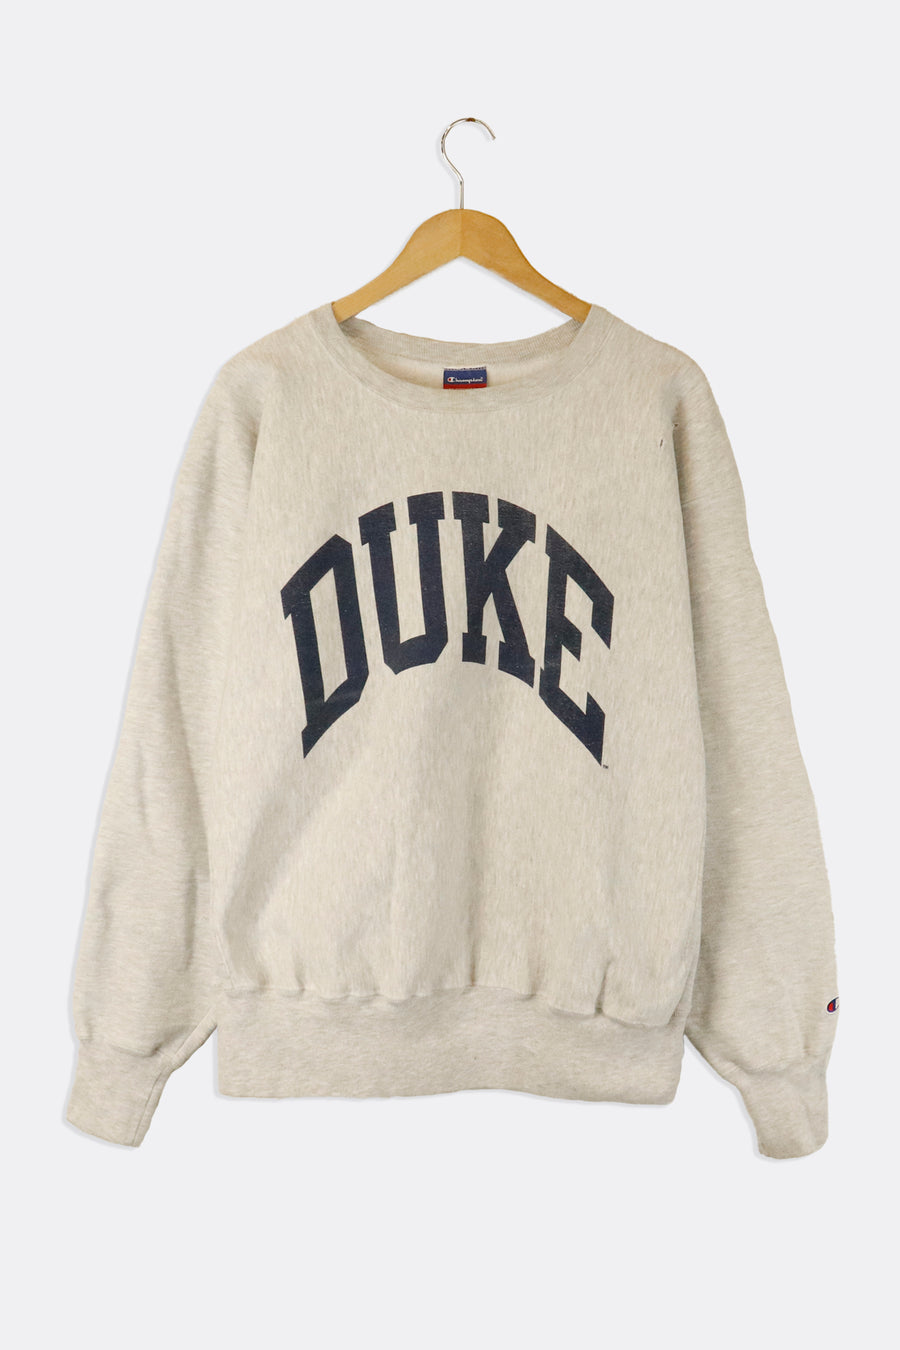 Vintage Varsity Duke Big Navy Font Across Font Vinyl Sweatshirt Sz XL